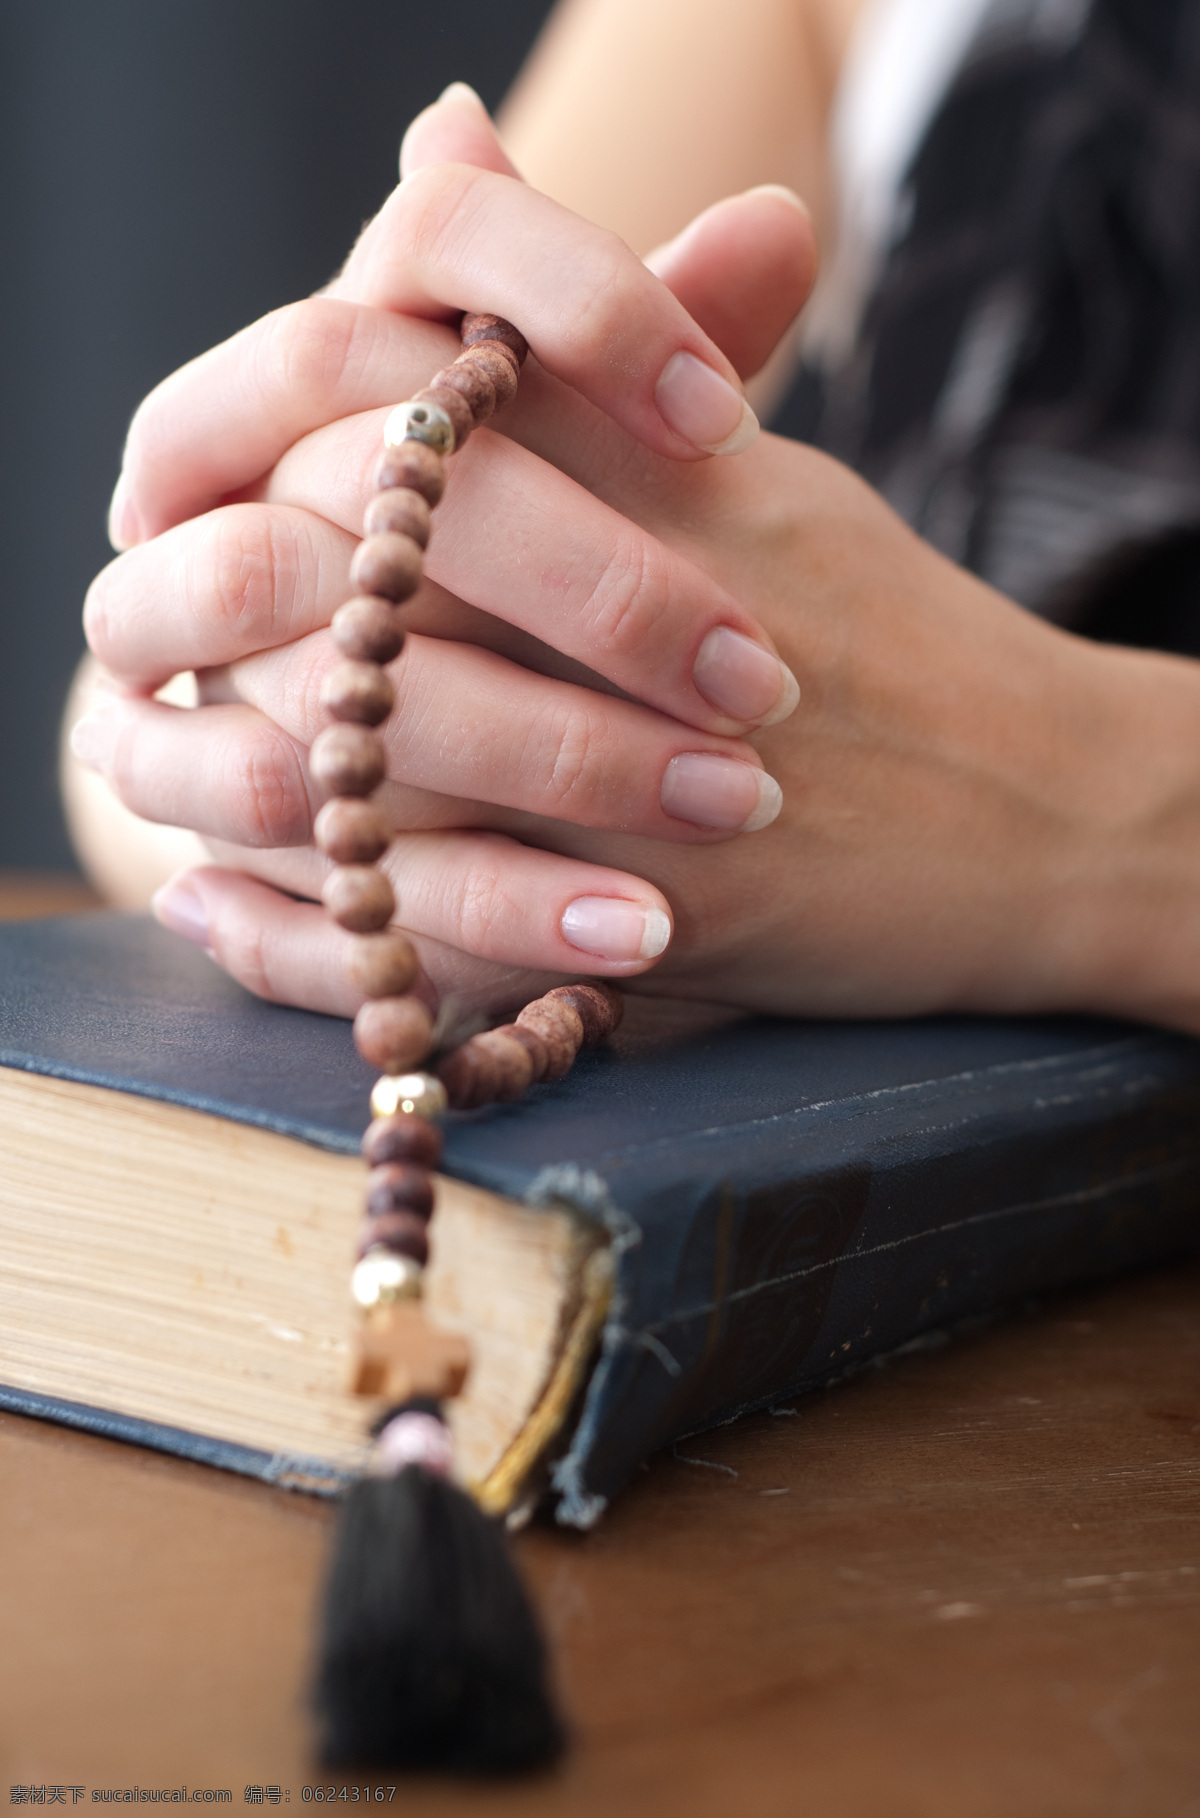 圣经 上 祈祷 女人 珠链 虔诚祈祷 祈祷手势 基督教 宗教文化 生活人物 人物图片